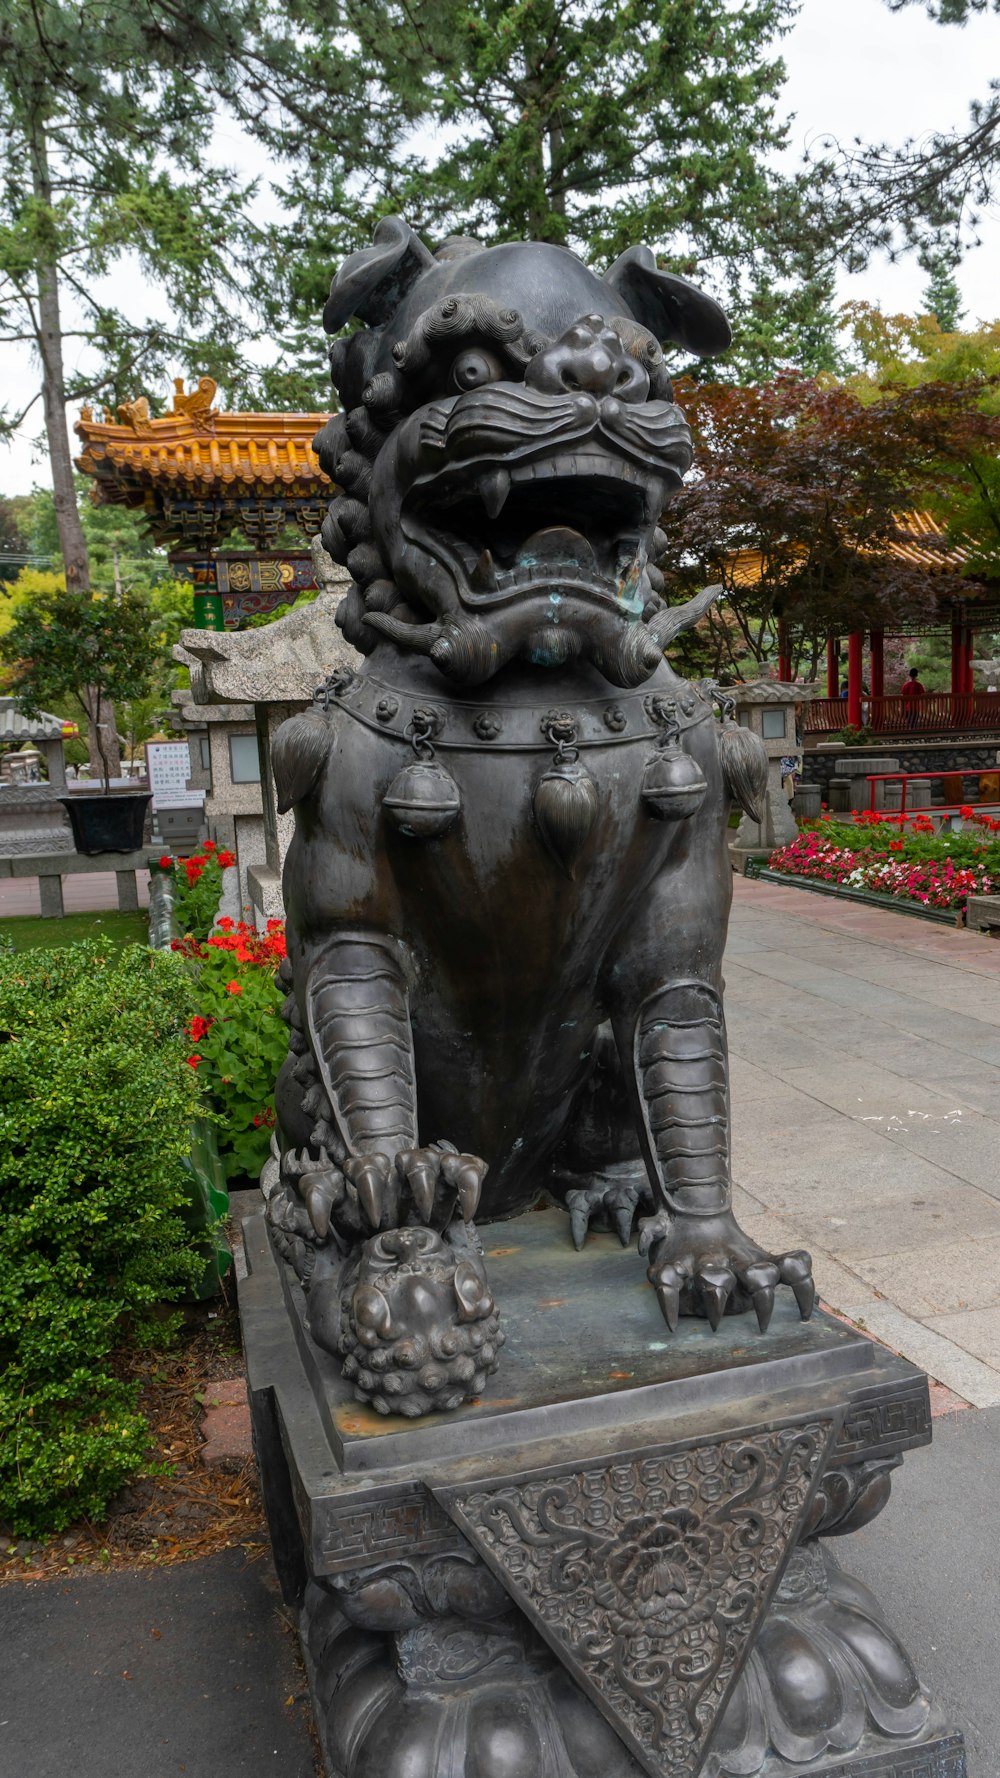 Una statua di un leone in un parco